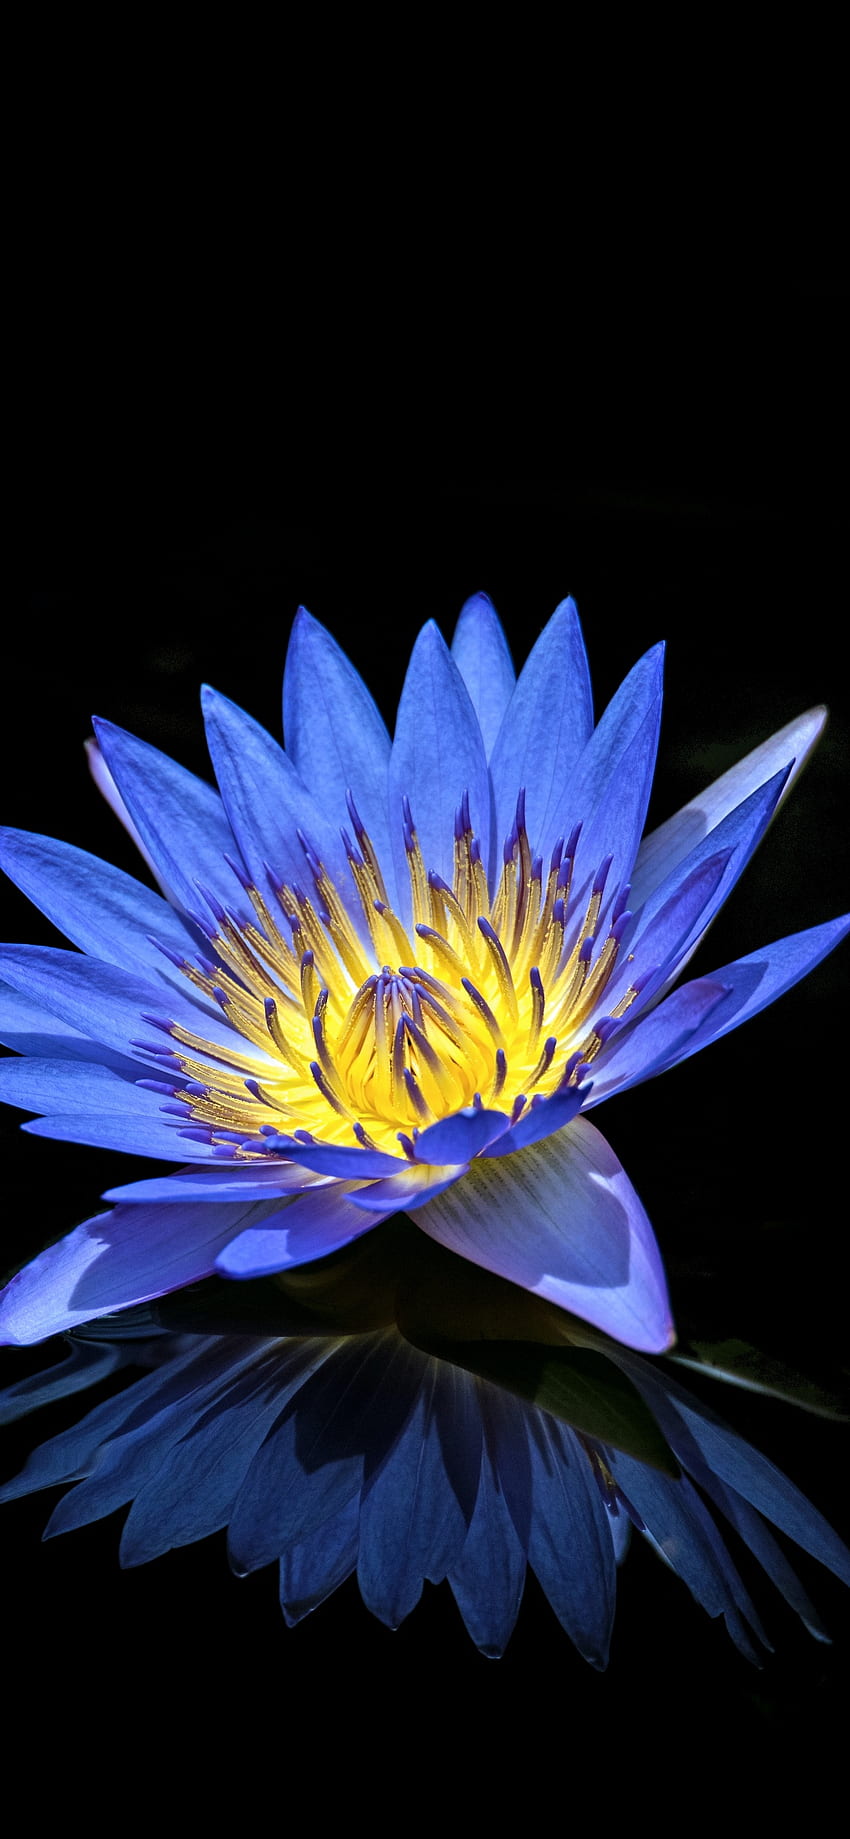 Seerose, blaue Blume, schwarzer Hintergrund, Spiegelung, Blumen, schwarzes und blaues Blumen-iPhone HD-Handy-Hintergrundbild